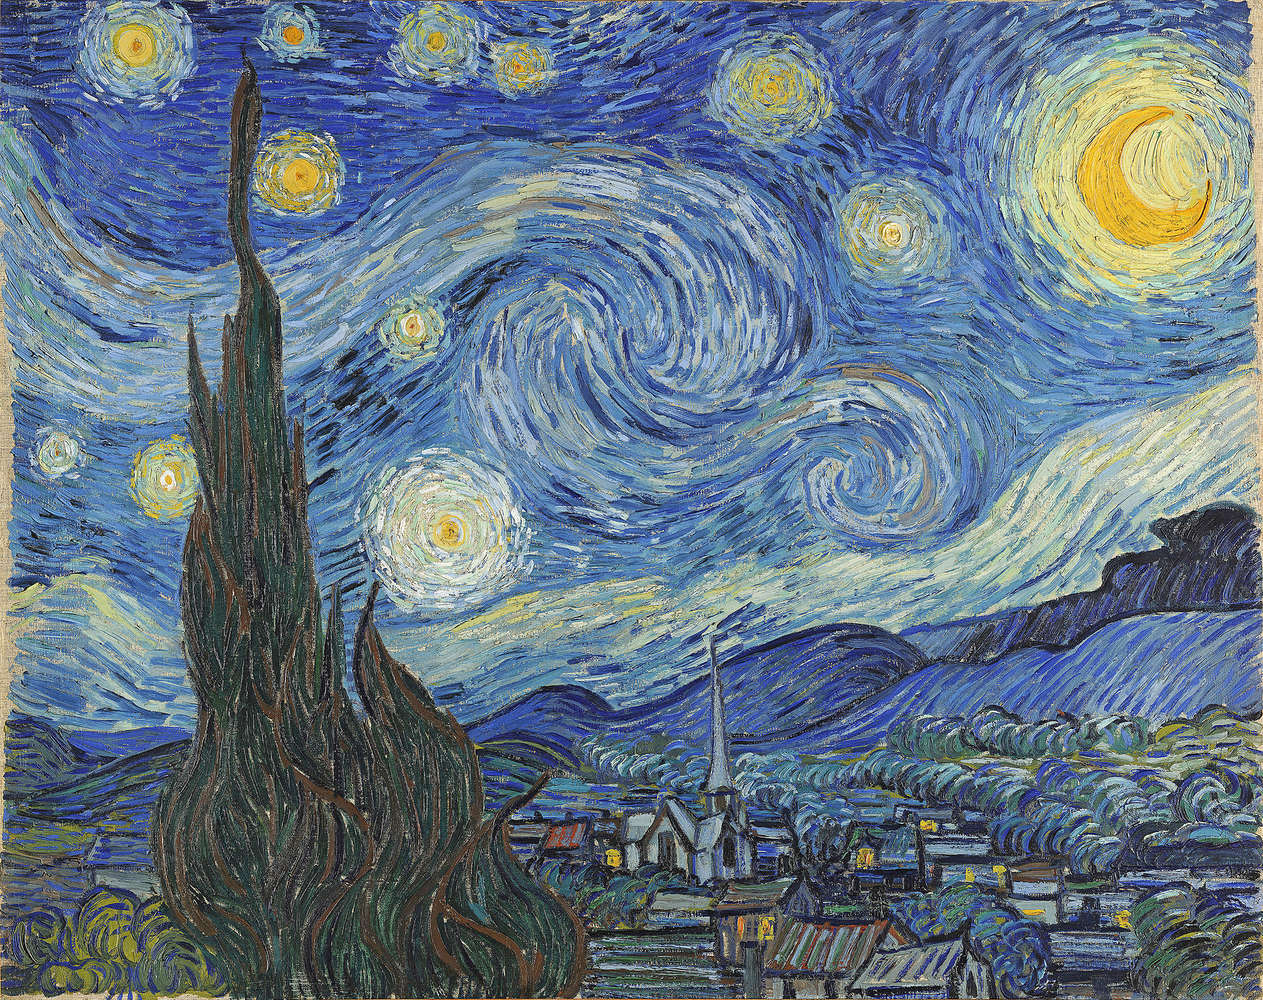             Fototapete "Die Sternennacht" von Vincent van Gogh
        